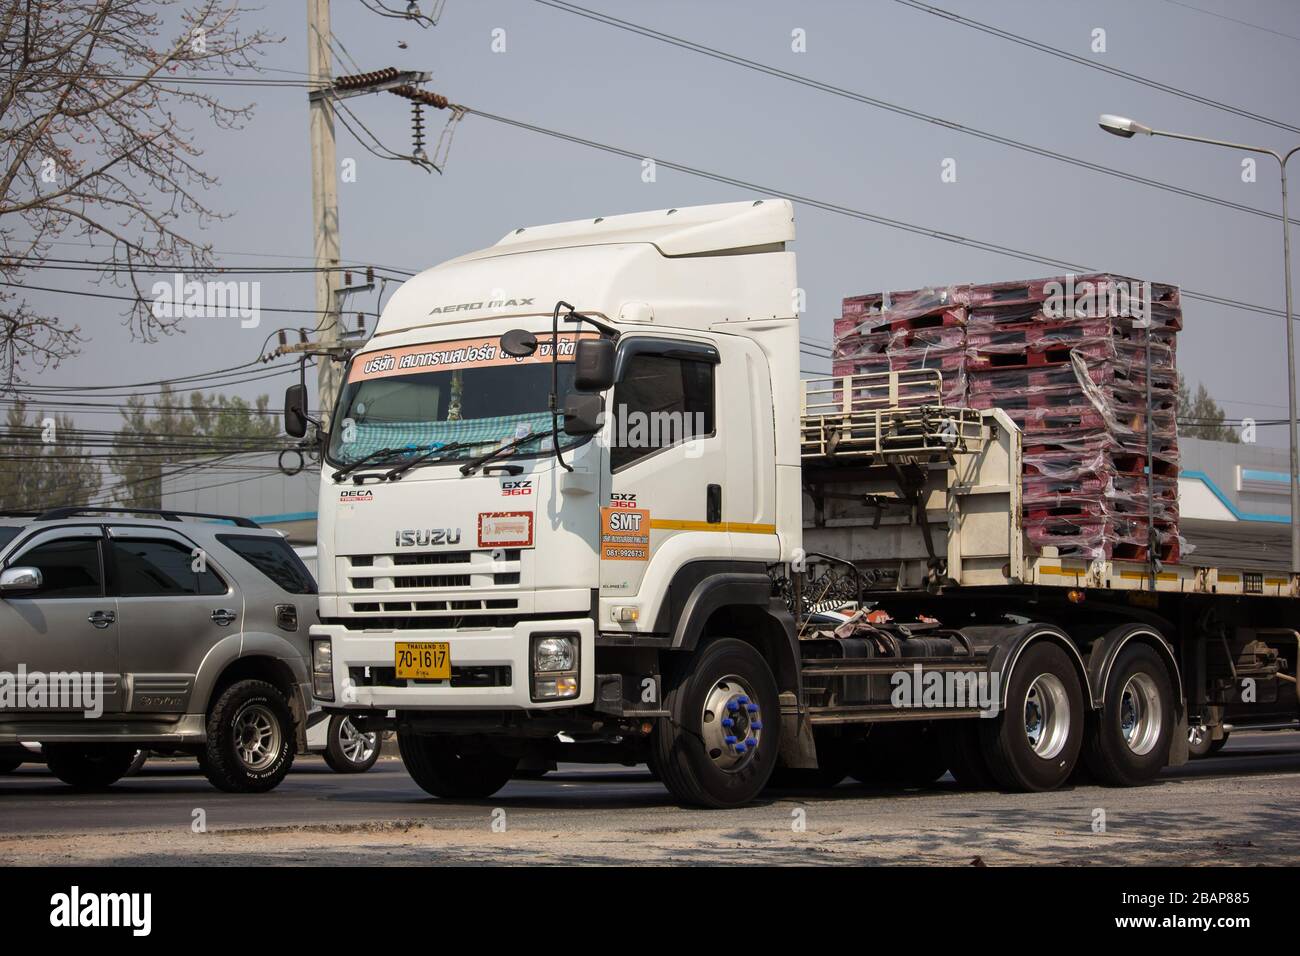 Chiangmai, Thaïlande - 20 février 2020: Camion de cargaison de conteneur de remorque de transport Saema. Photo à la route no.1014 à environ 8 km du centre-ville, thaïlande. Banque D'Images